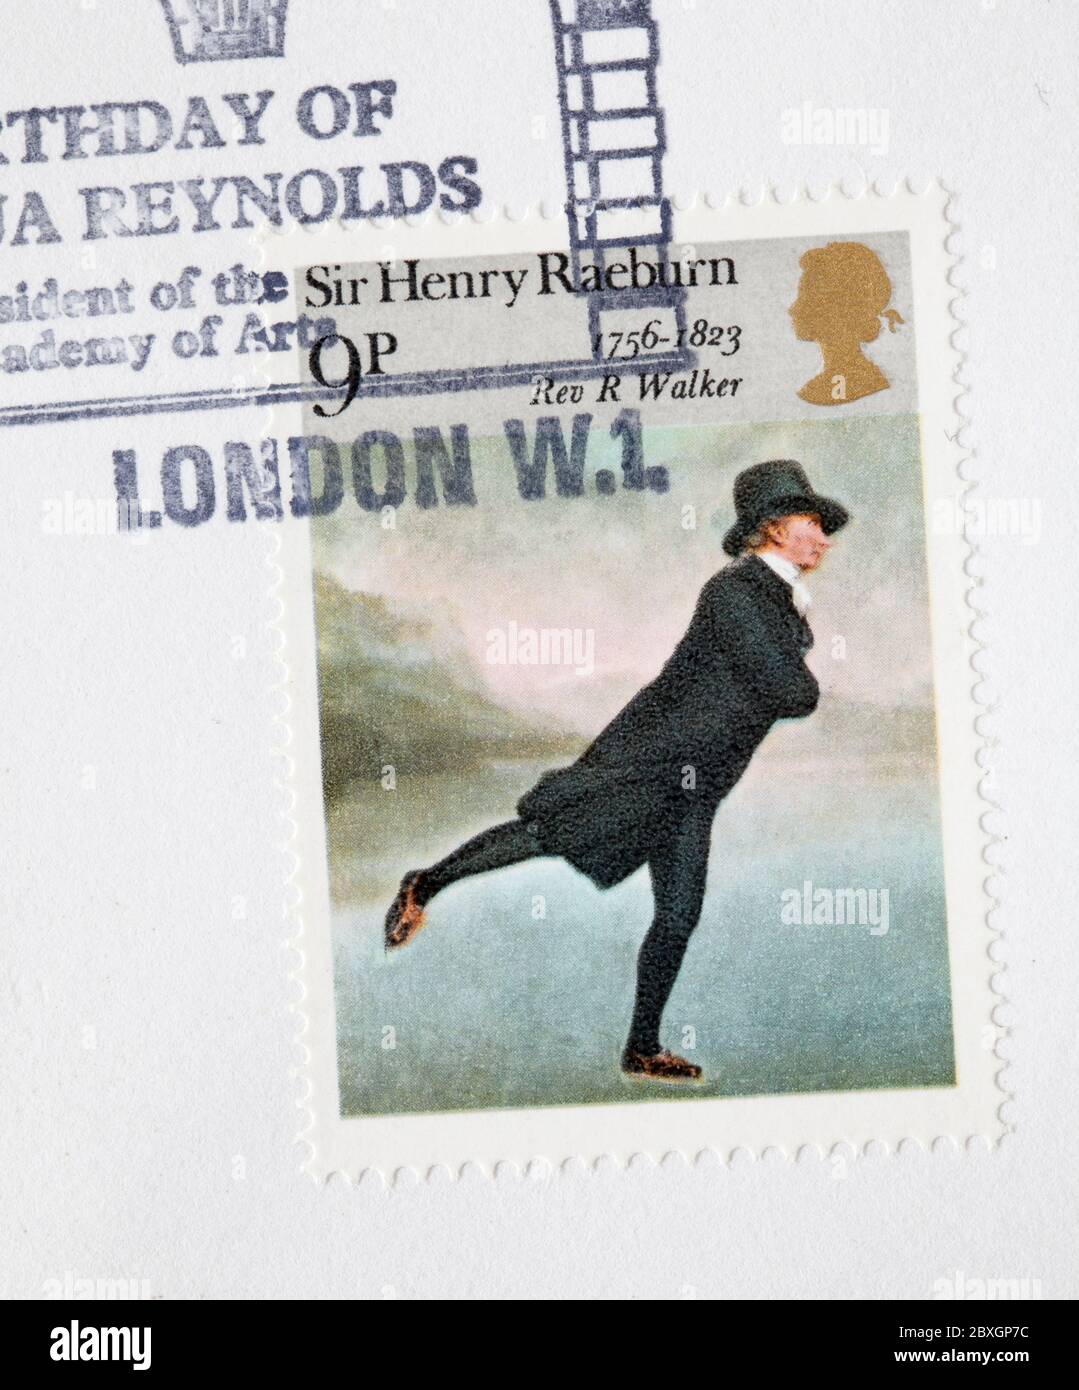 Copertina britannica del primo giorno francobolli - compleanno di Joshua Reynolds Foto Stock